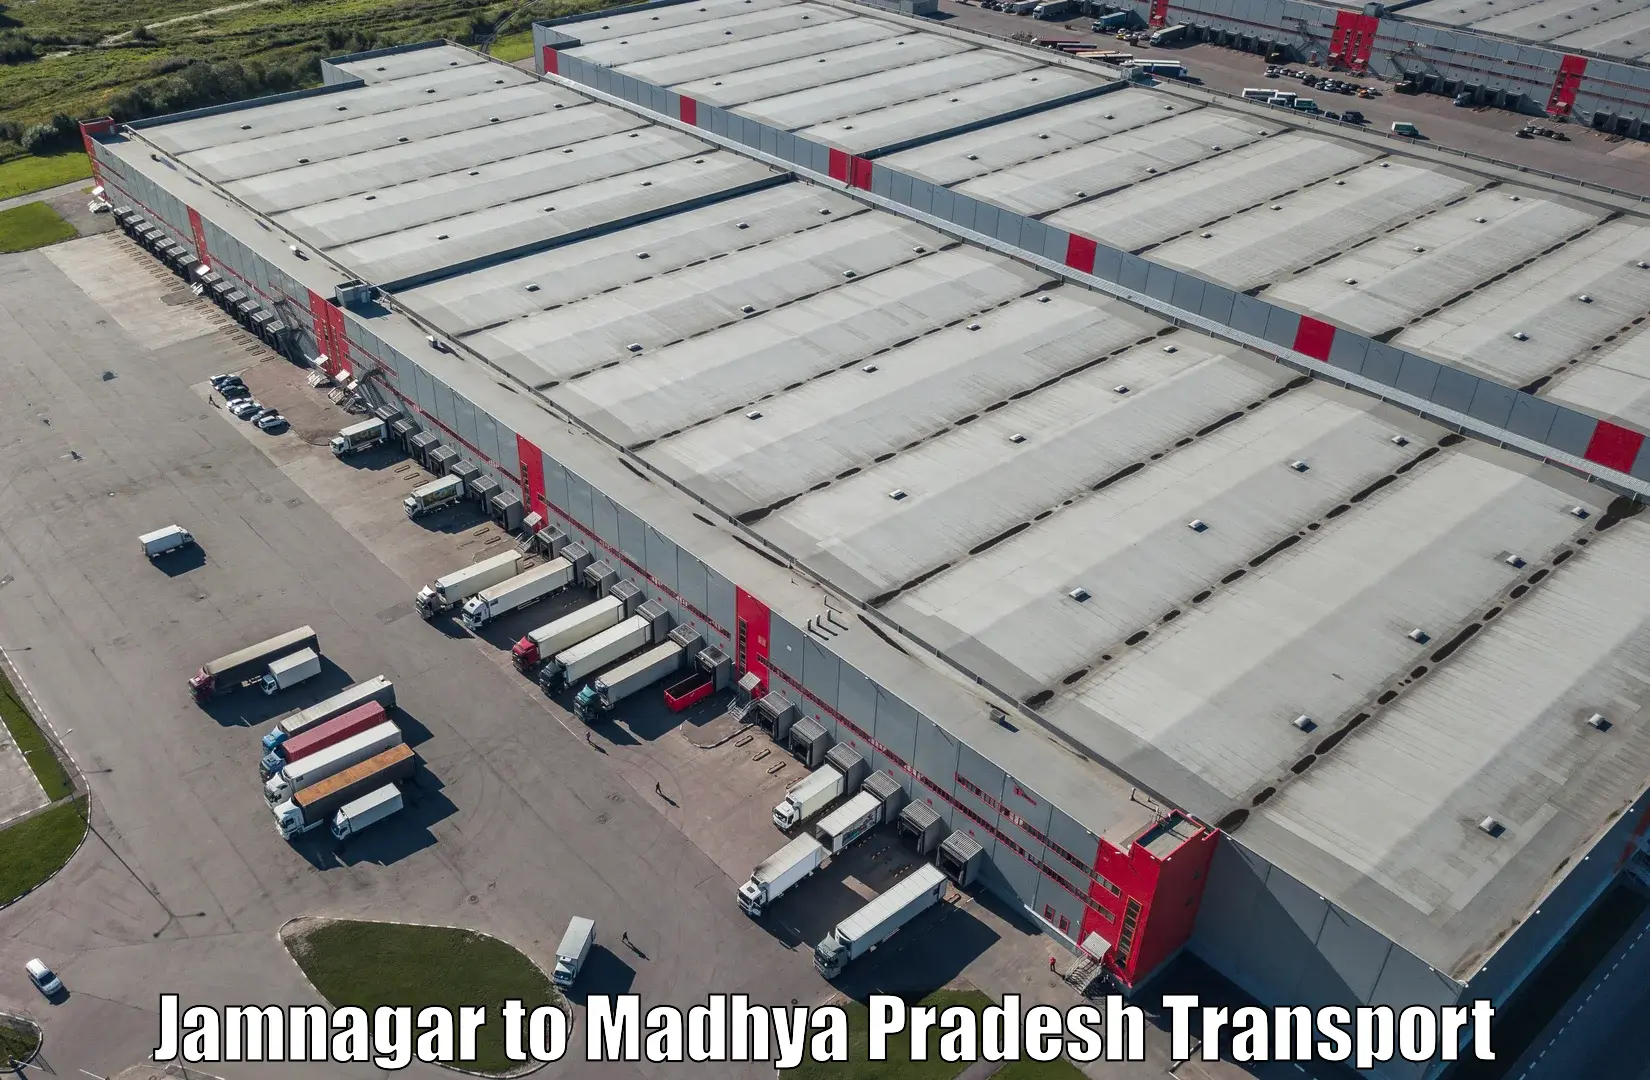 Lorry transport service in Jamnagar to Satna